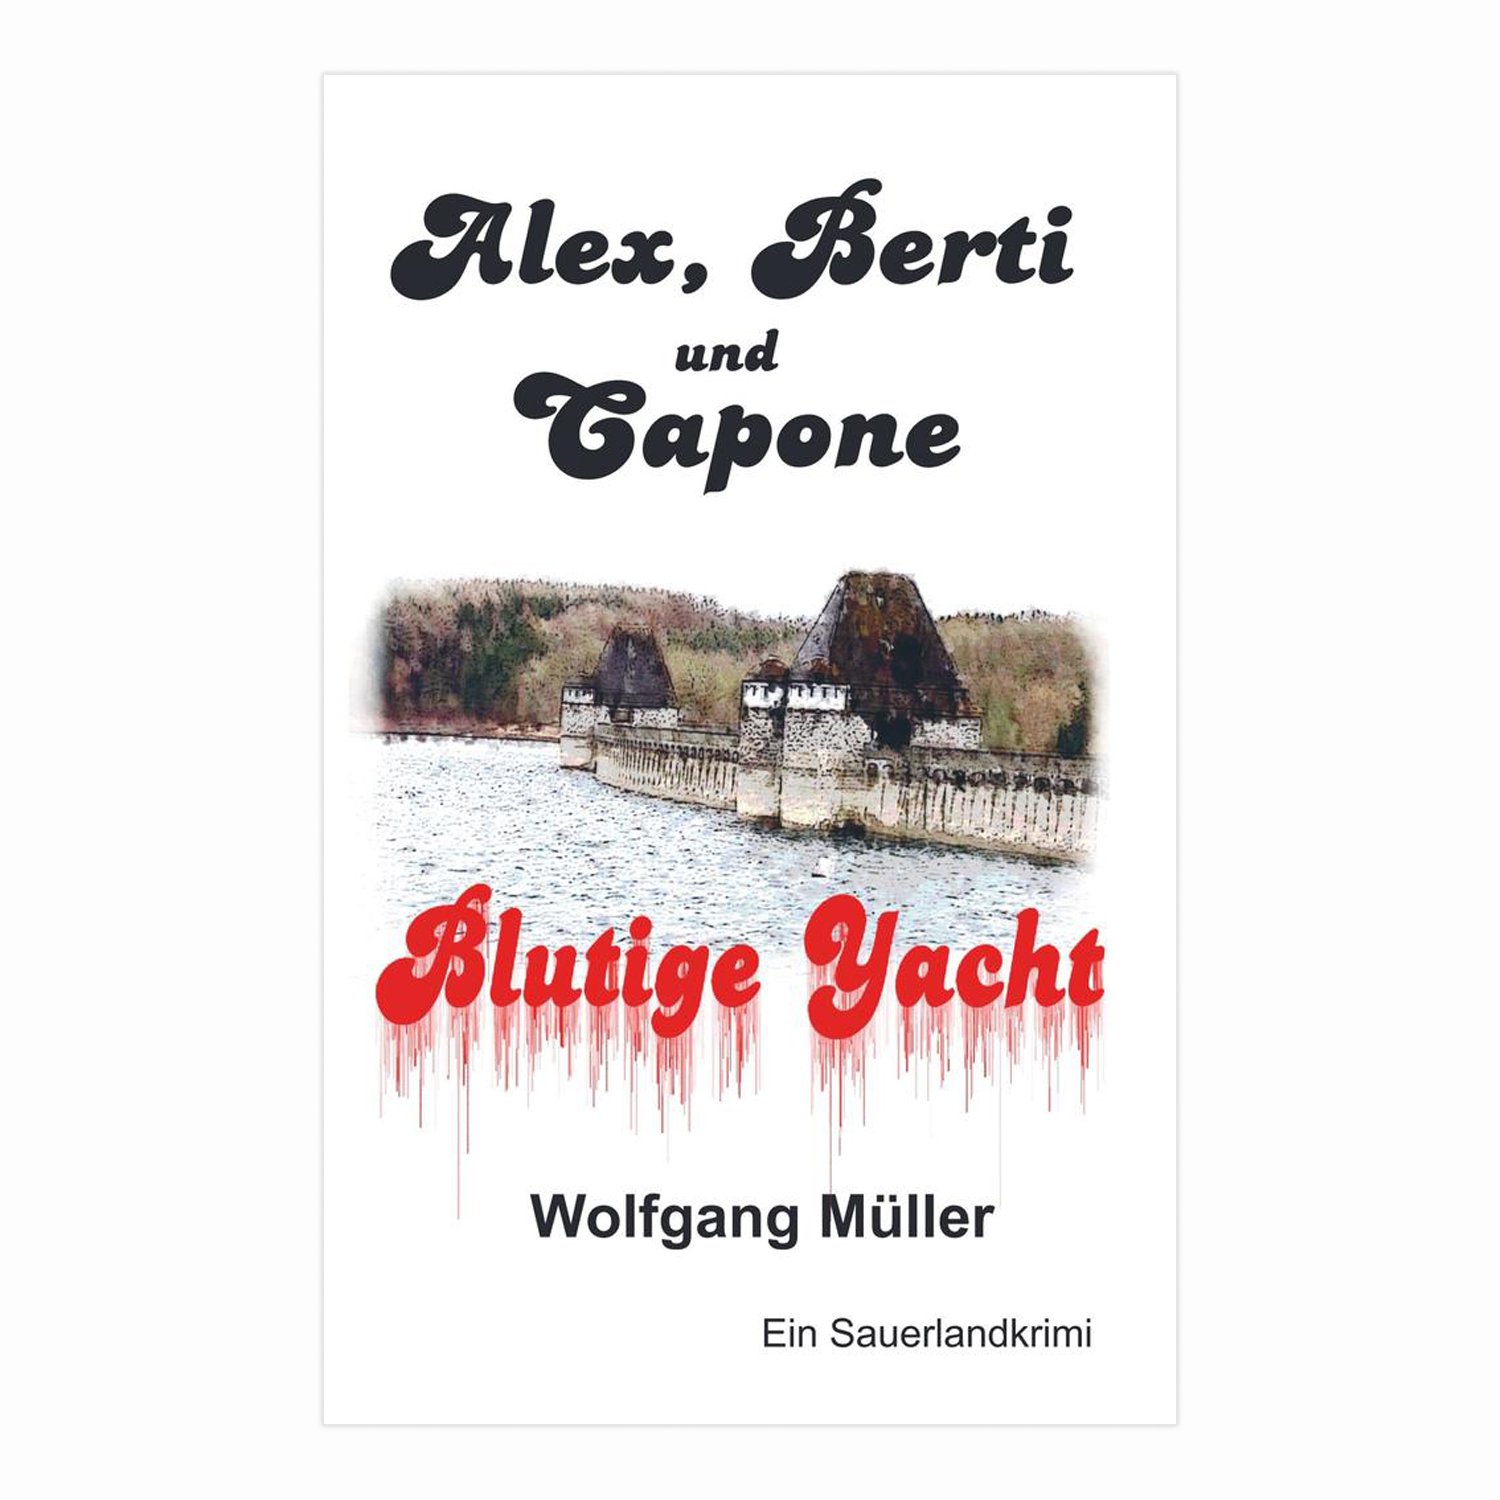 Alex, Berti und Capone – Blutige Yacht (Wolfgang Müller)